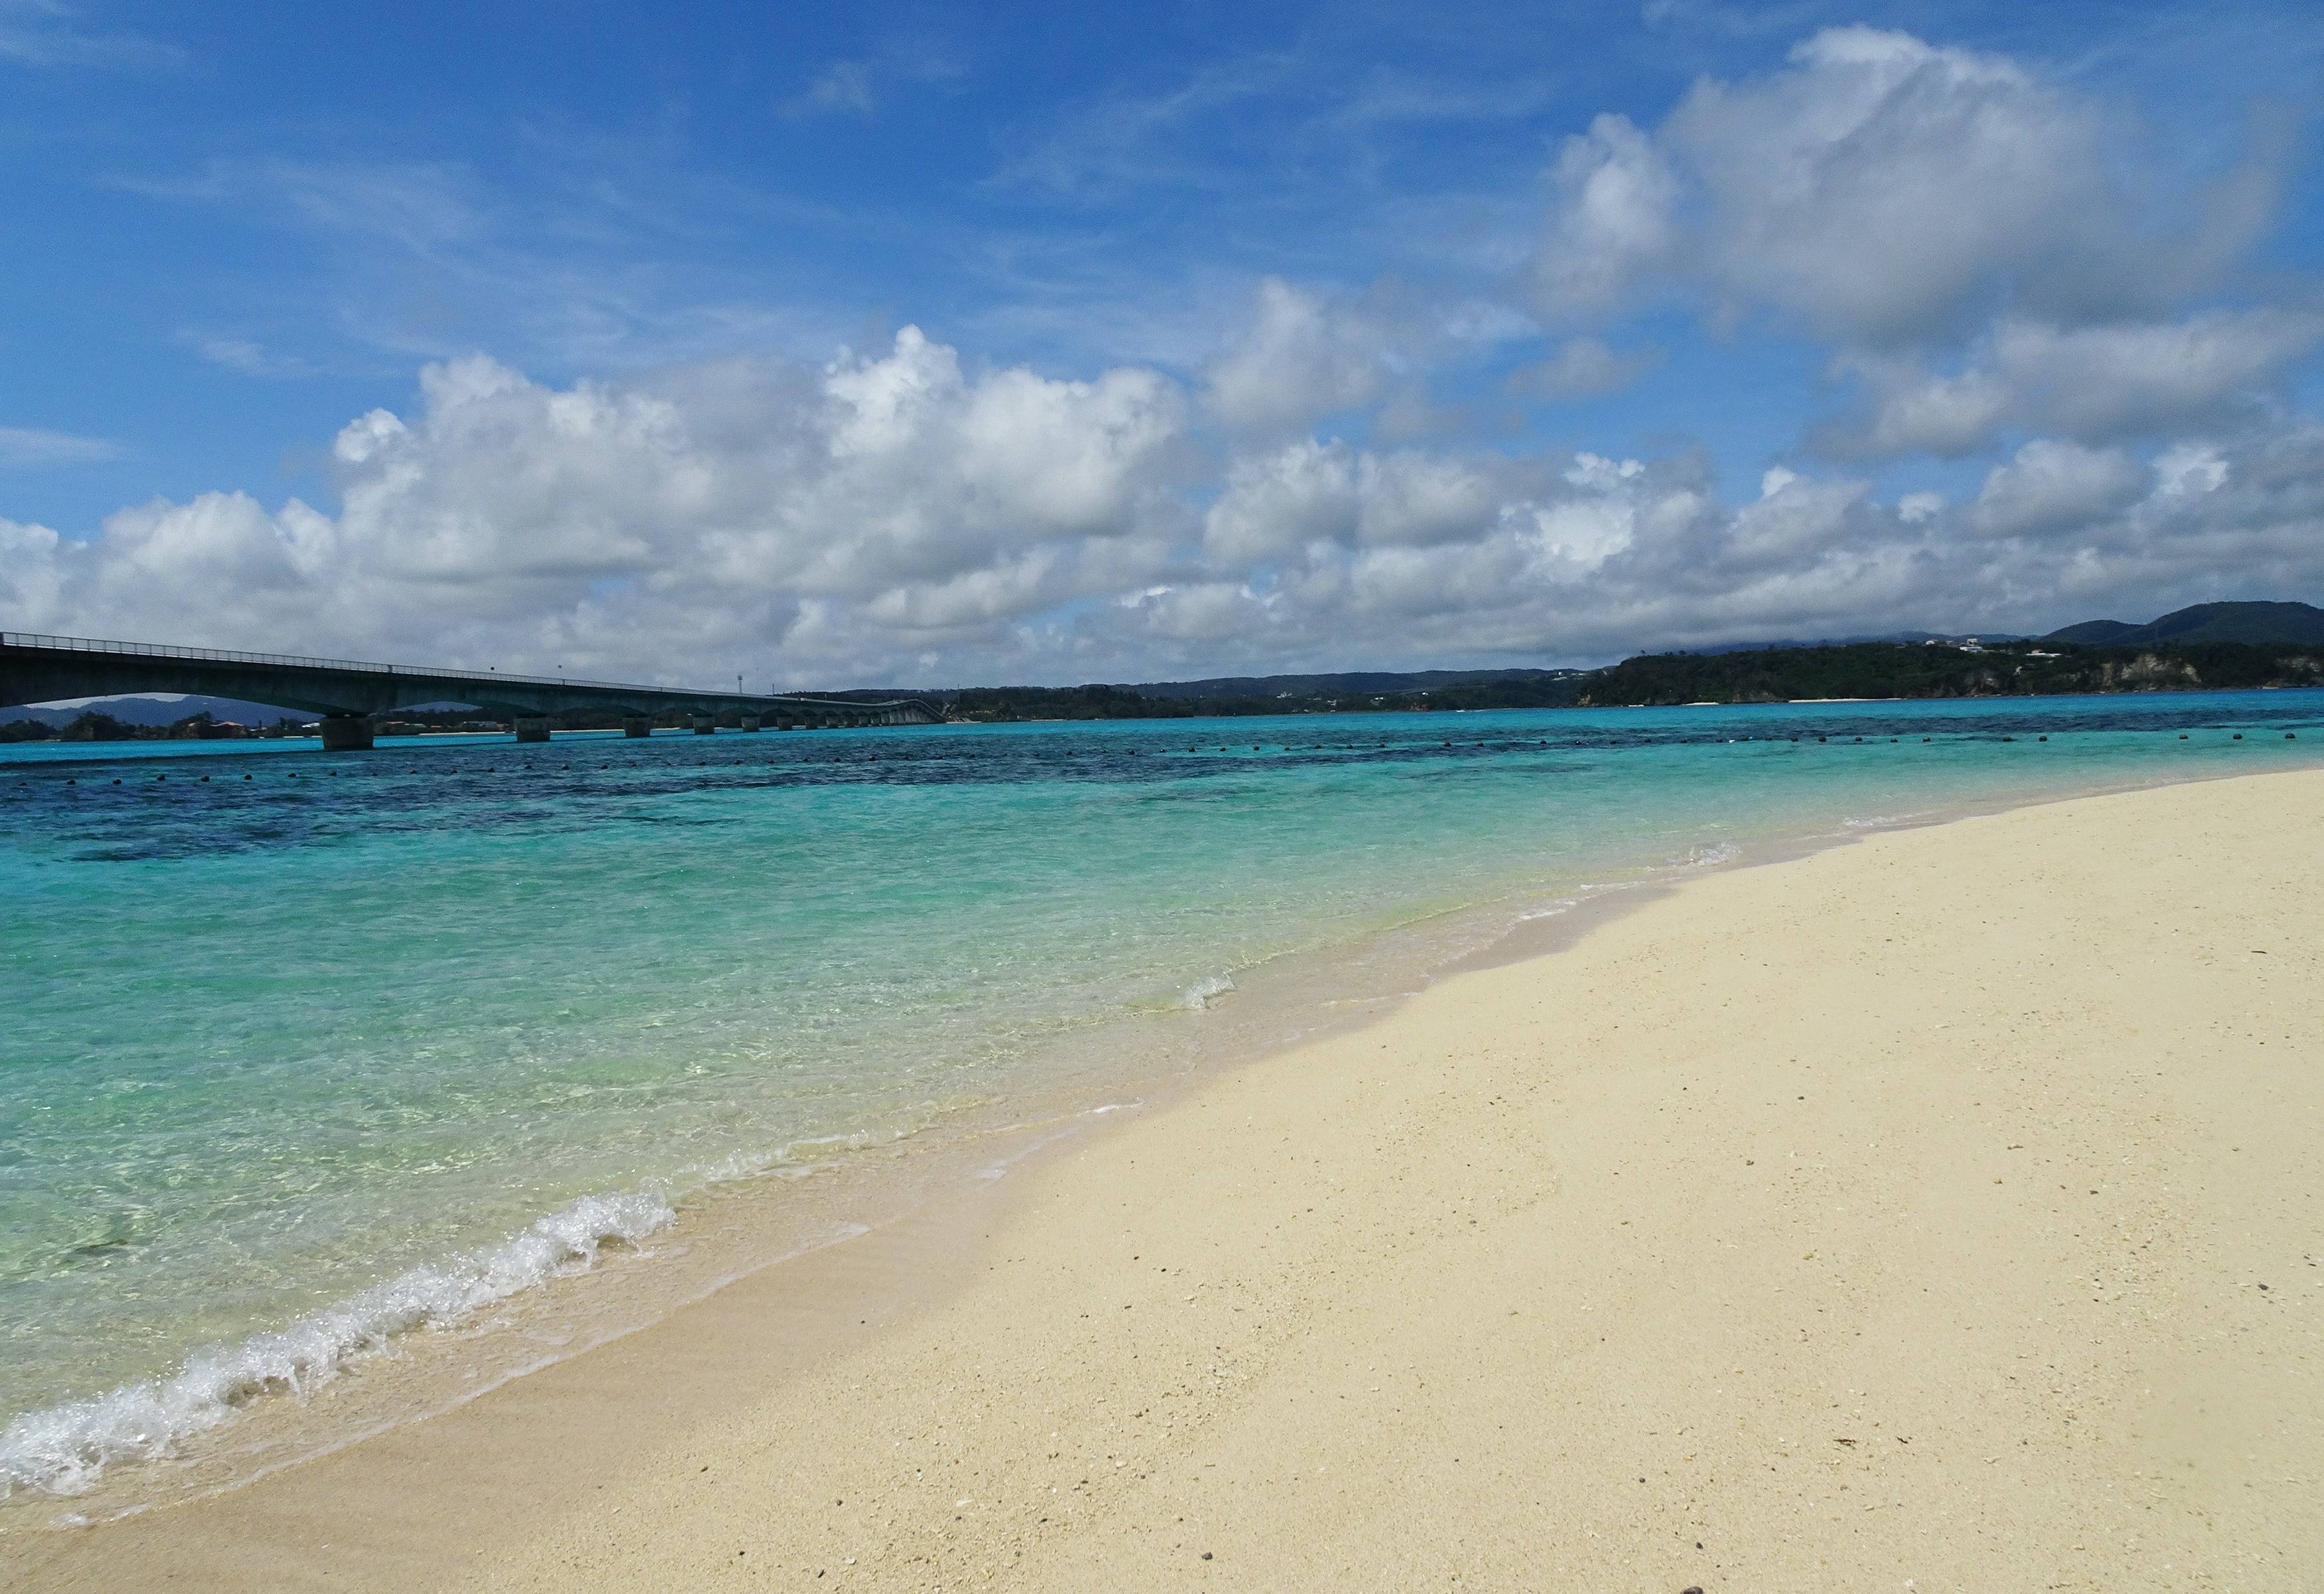 Prima giornata di relax tra le belle spiagge di Okinawa